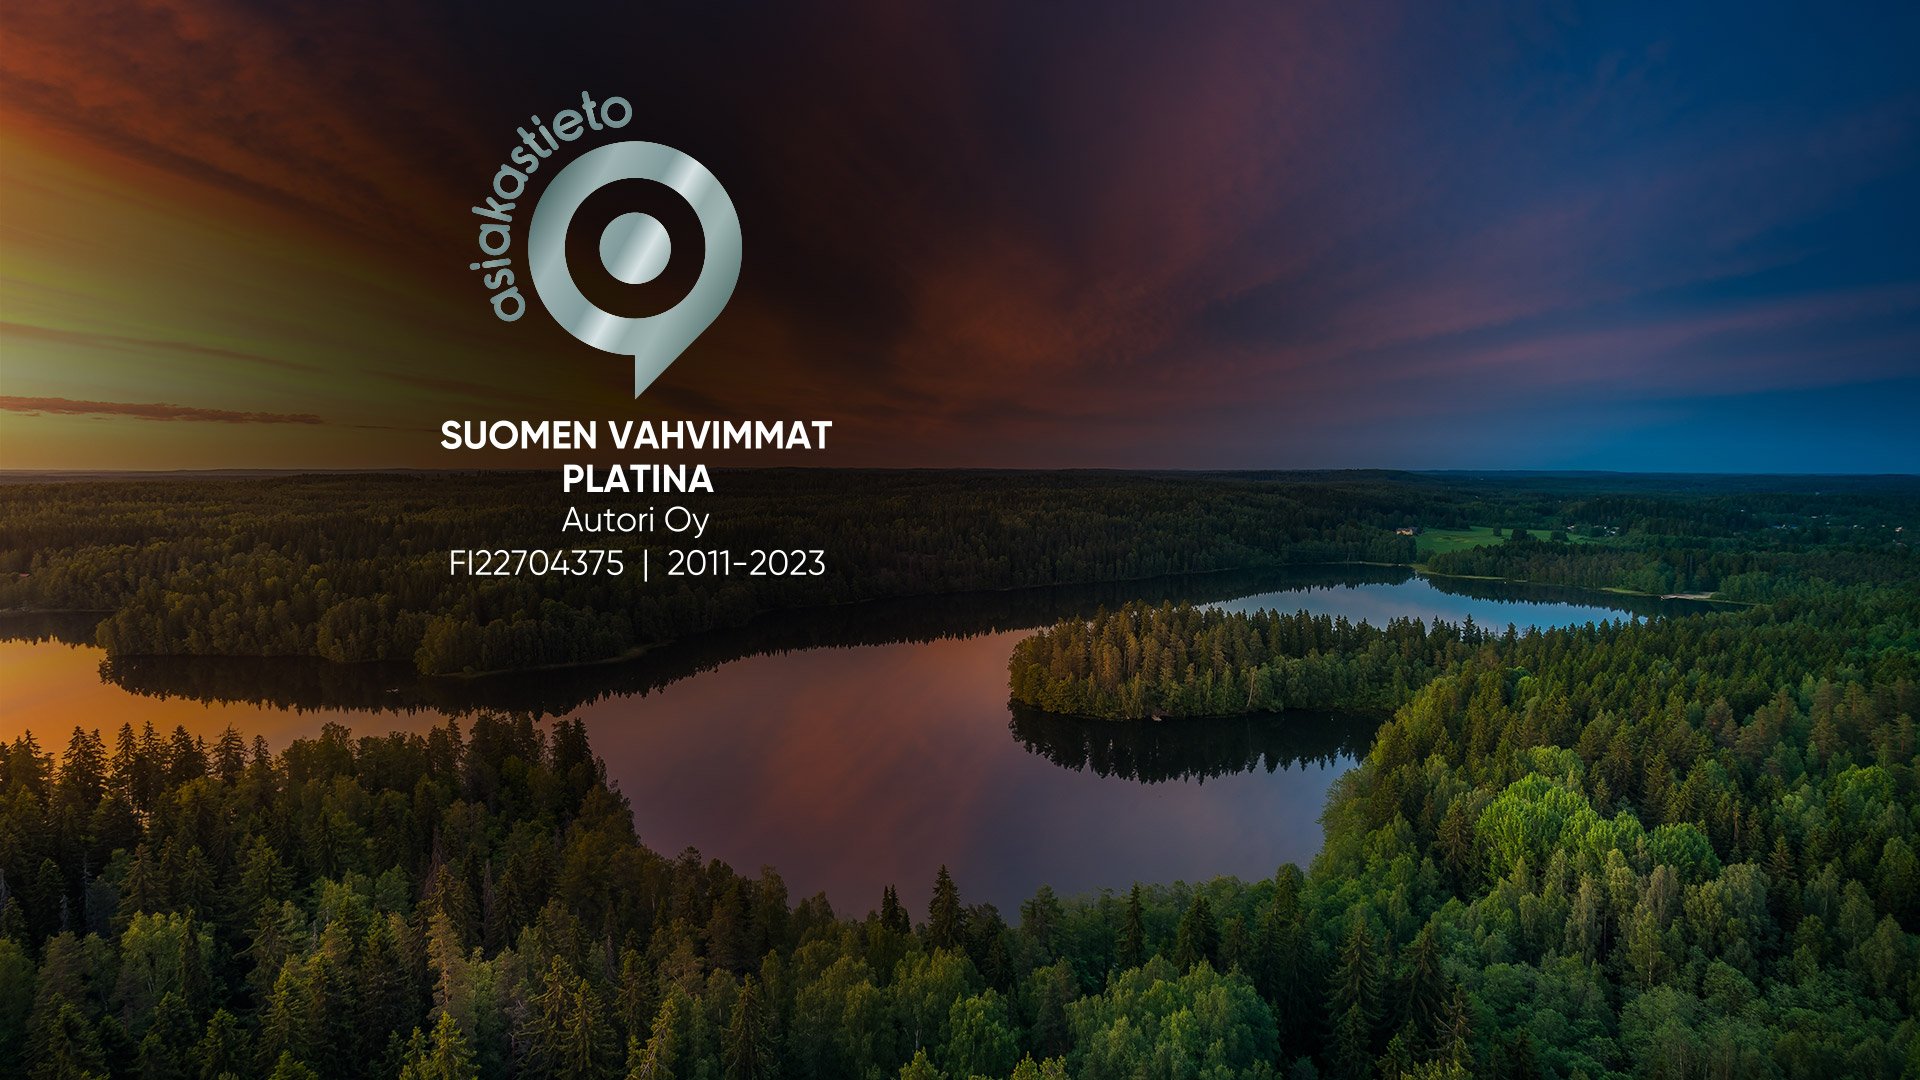 Suomen Vahvimmat Platina -sertifikaatti Autori Oylle